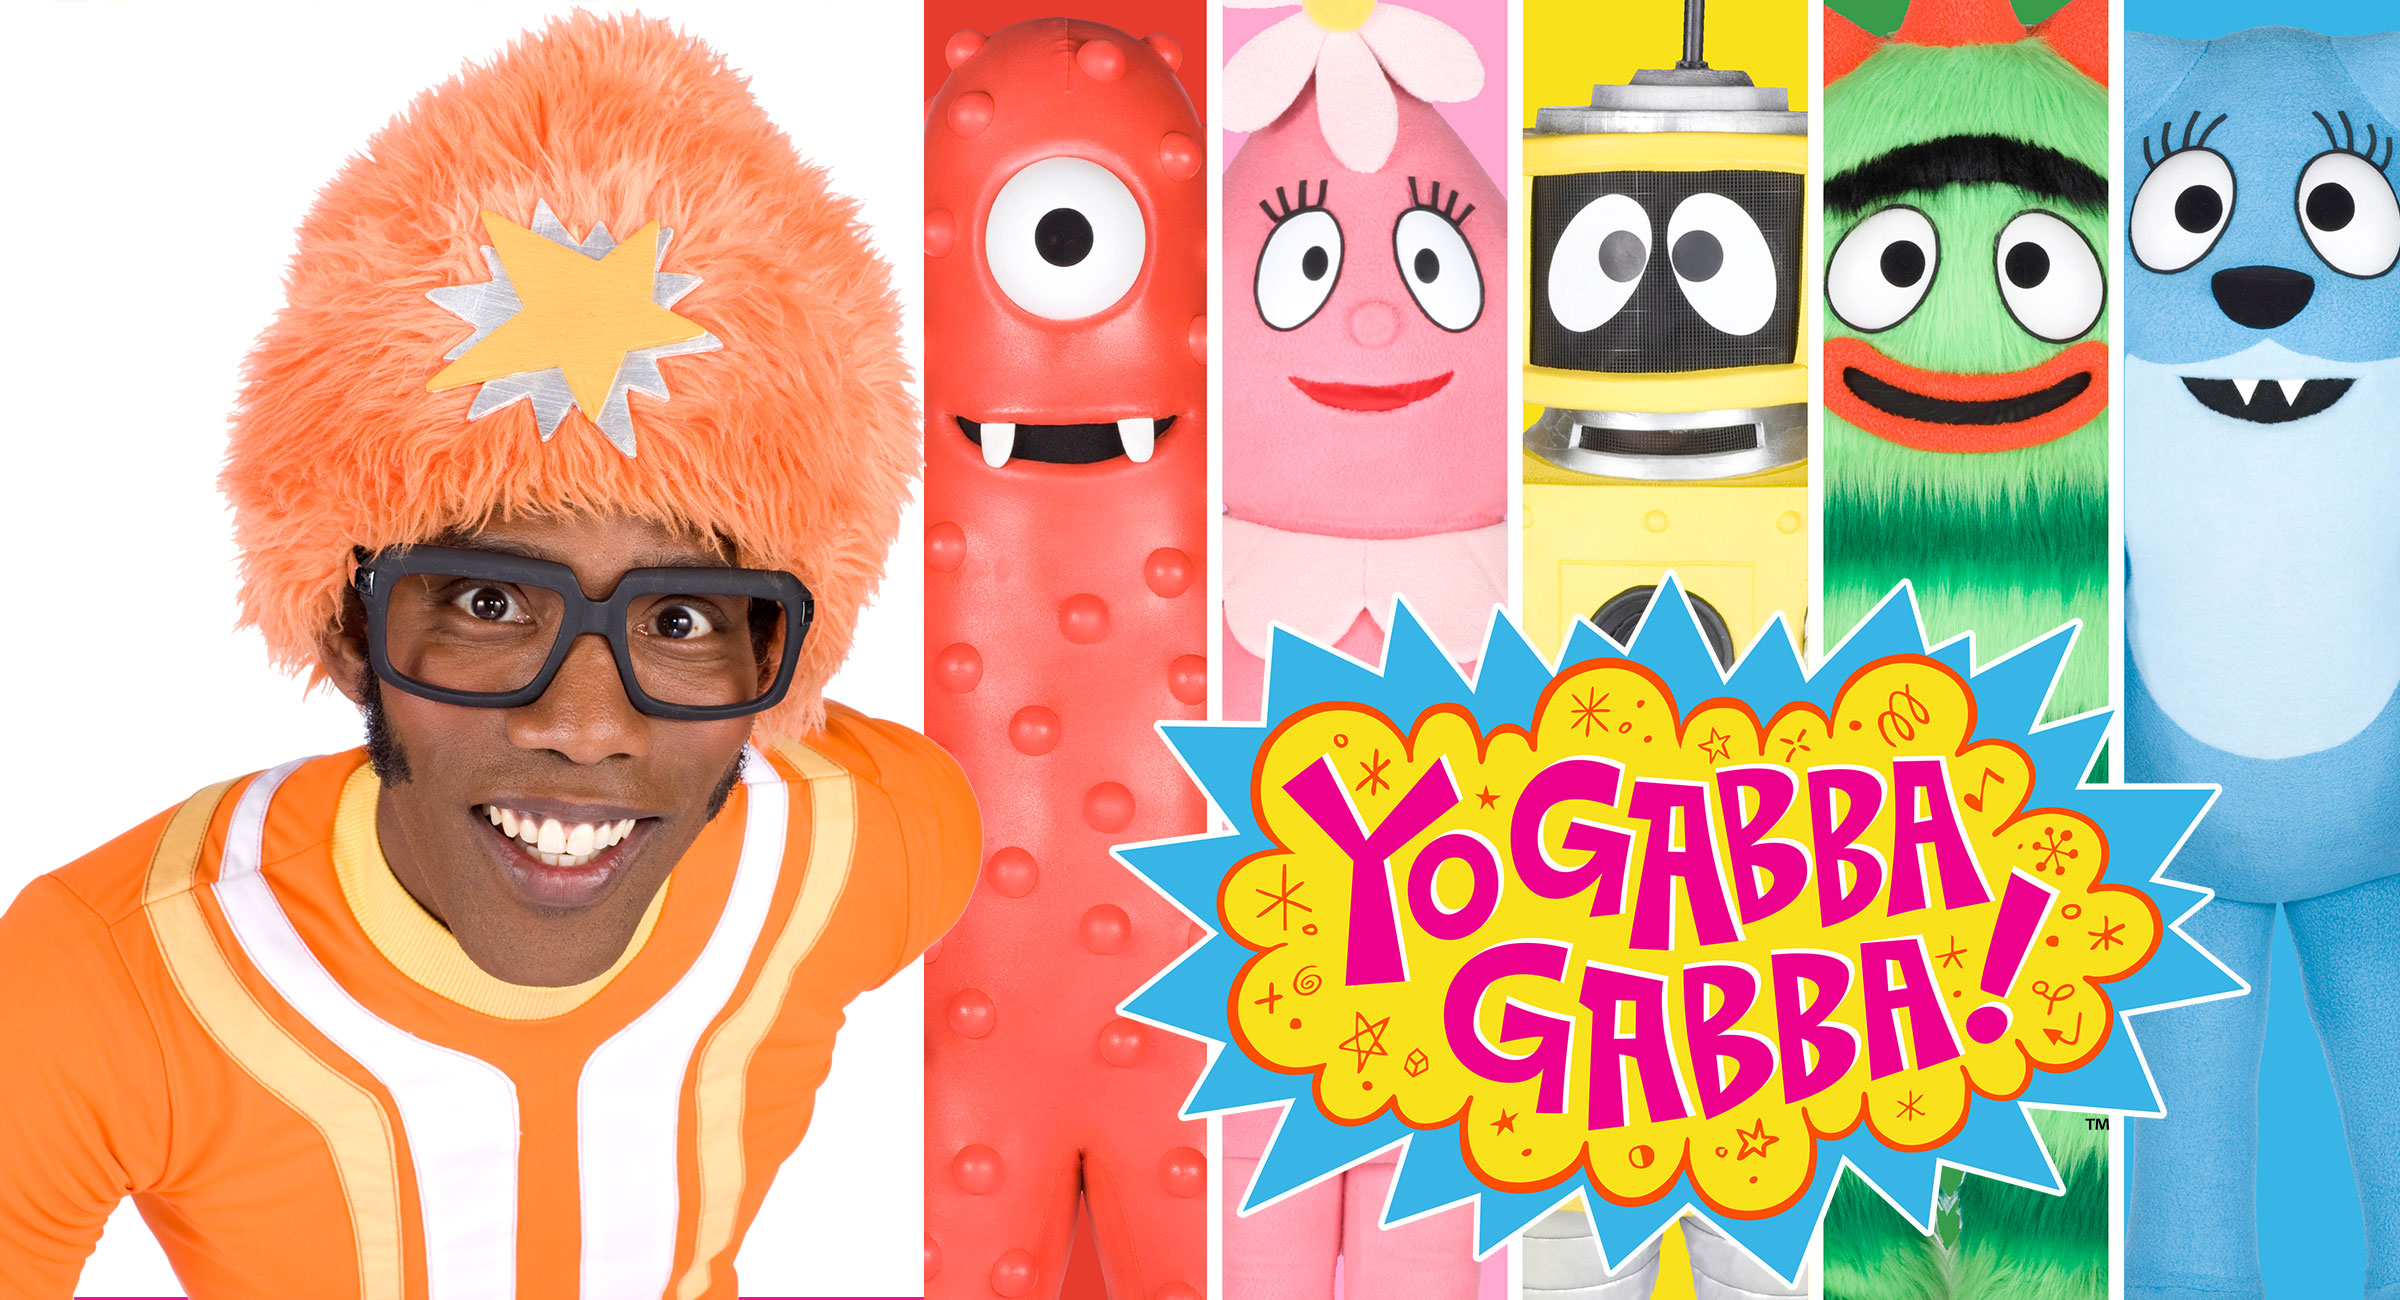 Yo Gabba Gabba - The Gabba Gang! Plex, Toodee, Muno, Foofa, and Brobee.